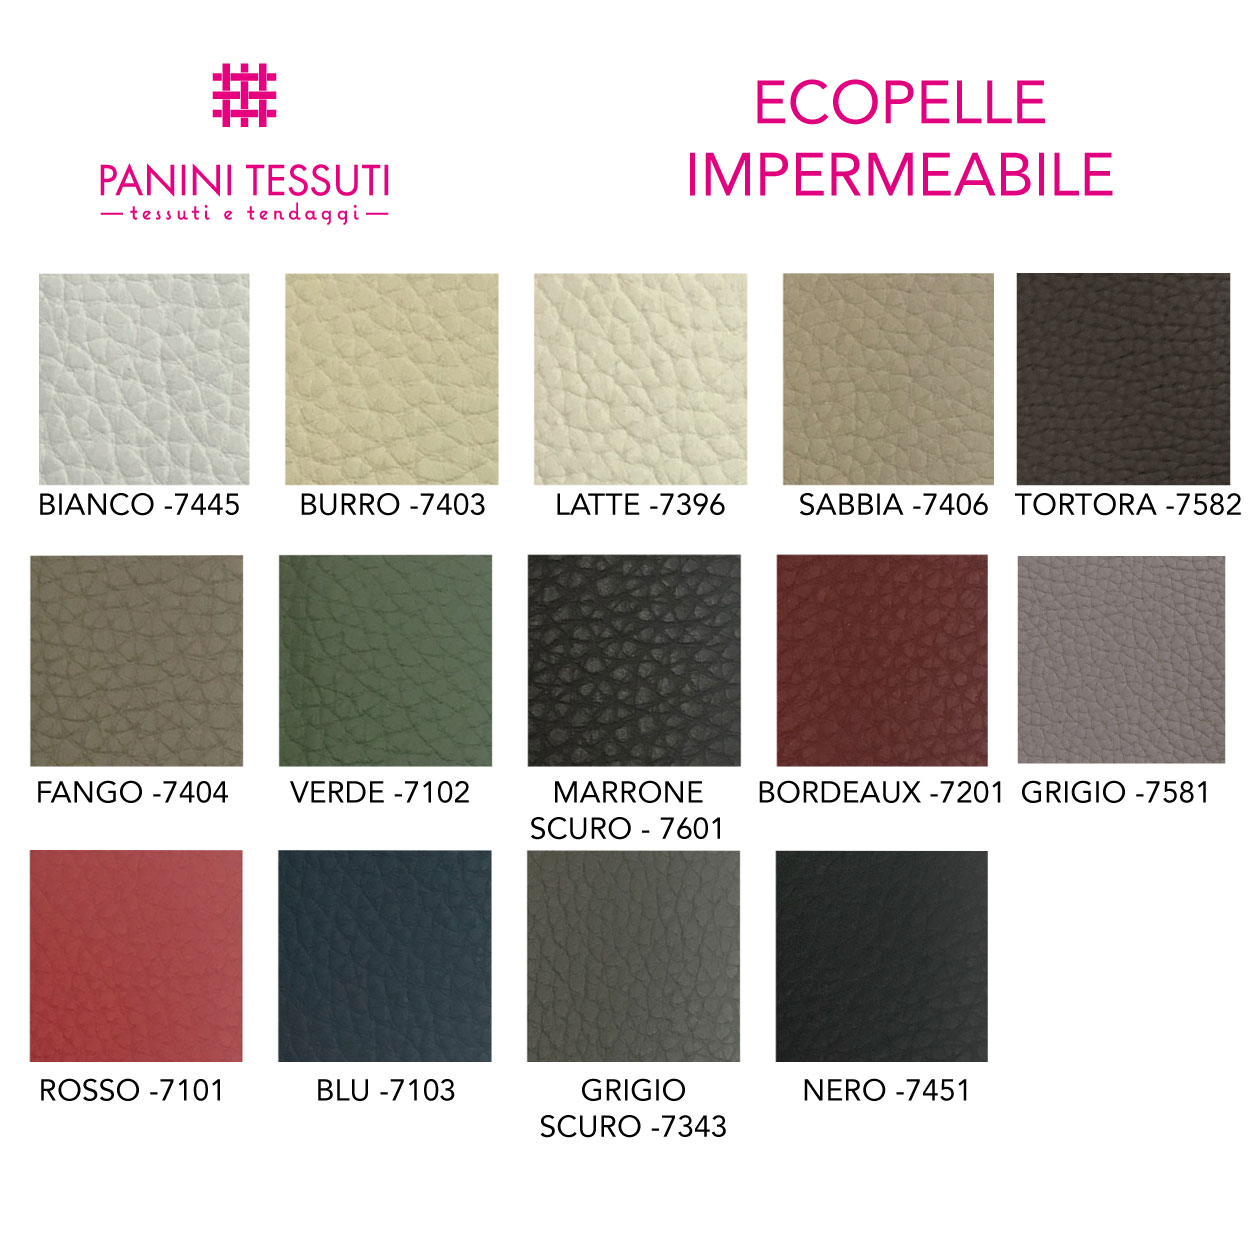 Ecopelle impermeabile cartella colore shopware (9)